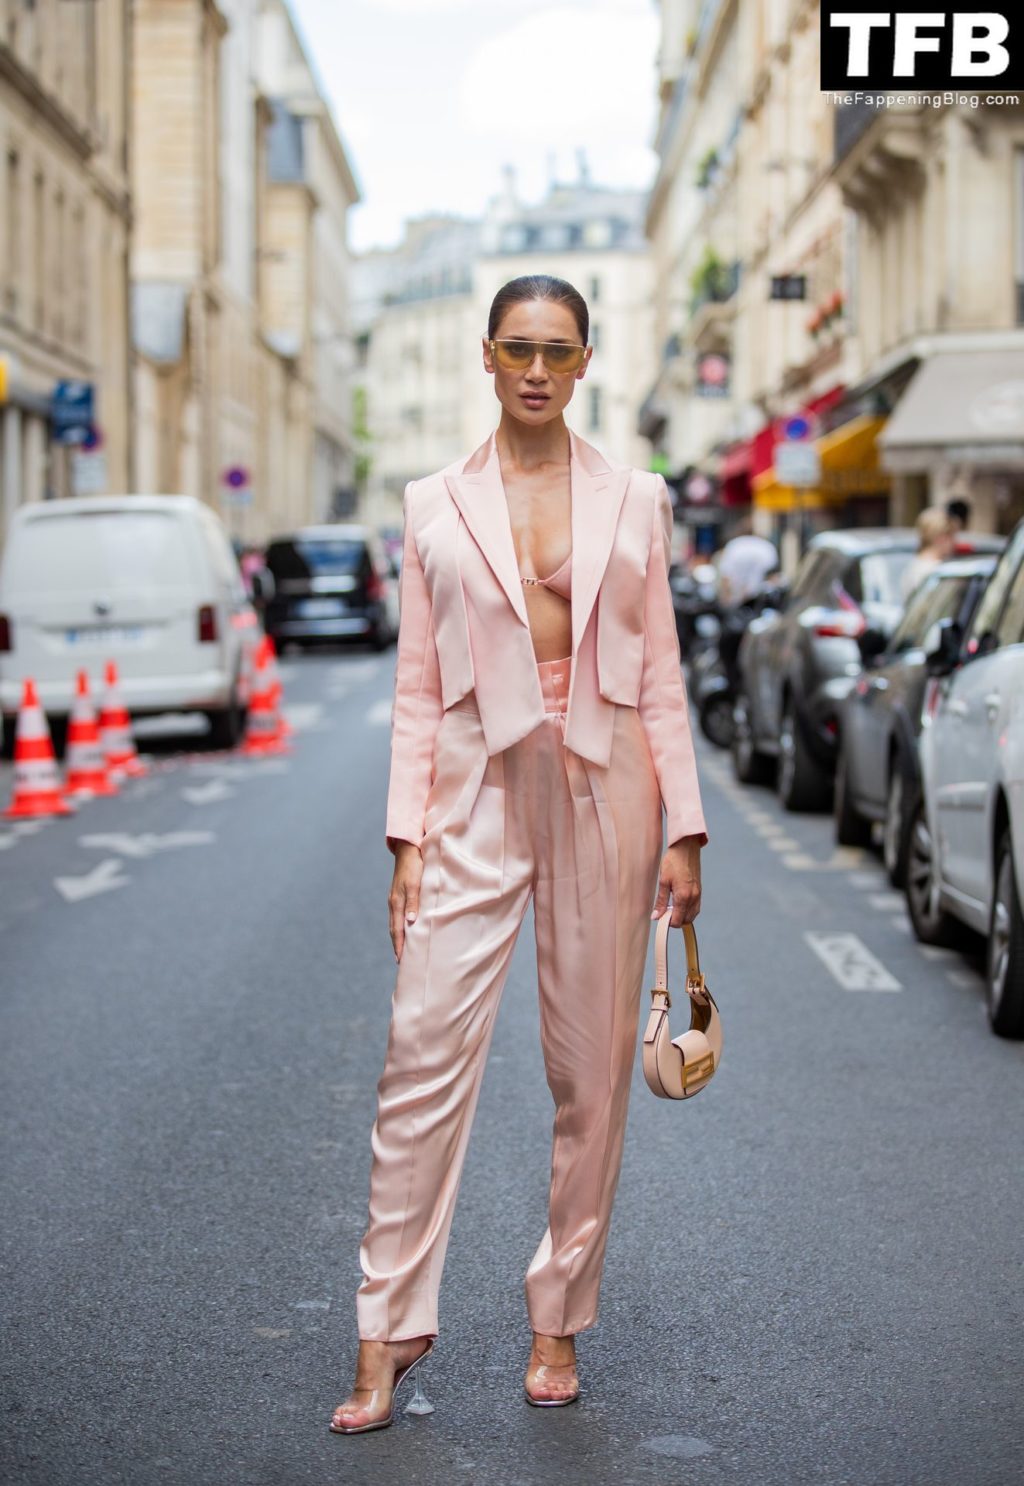 Sabina Jakubowicz Looks Stunning in Paris (16 Photos)